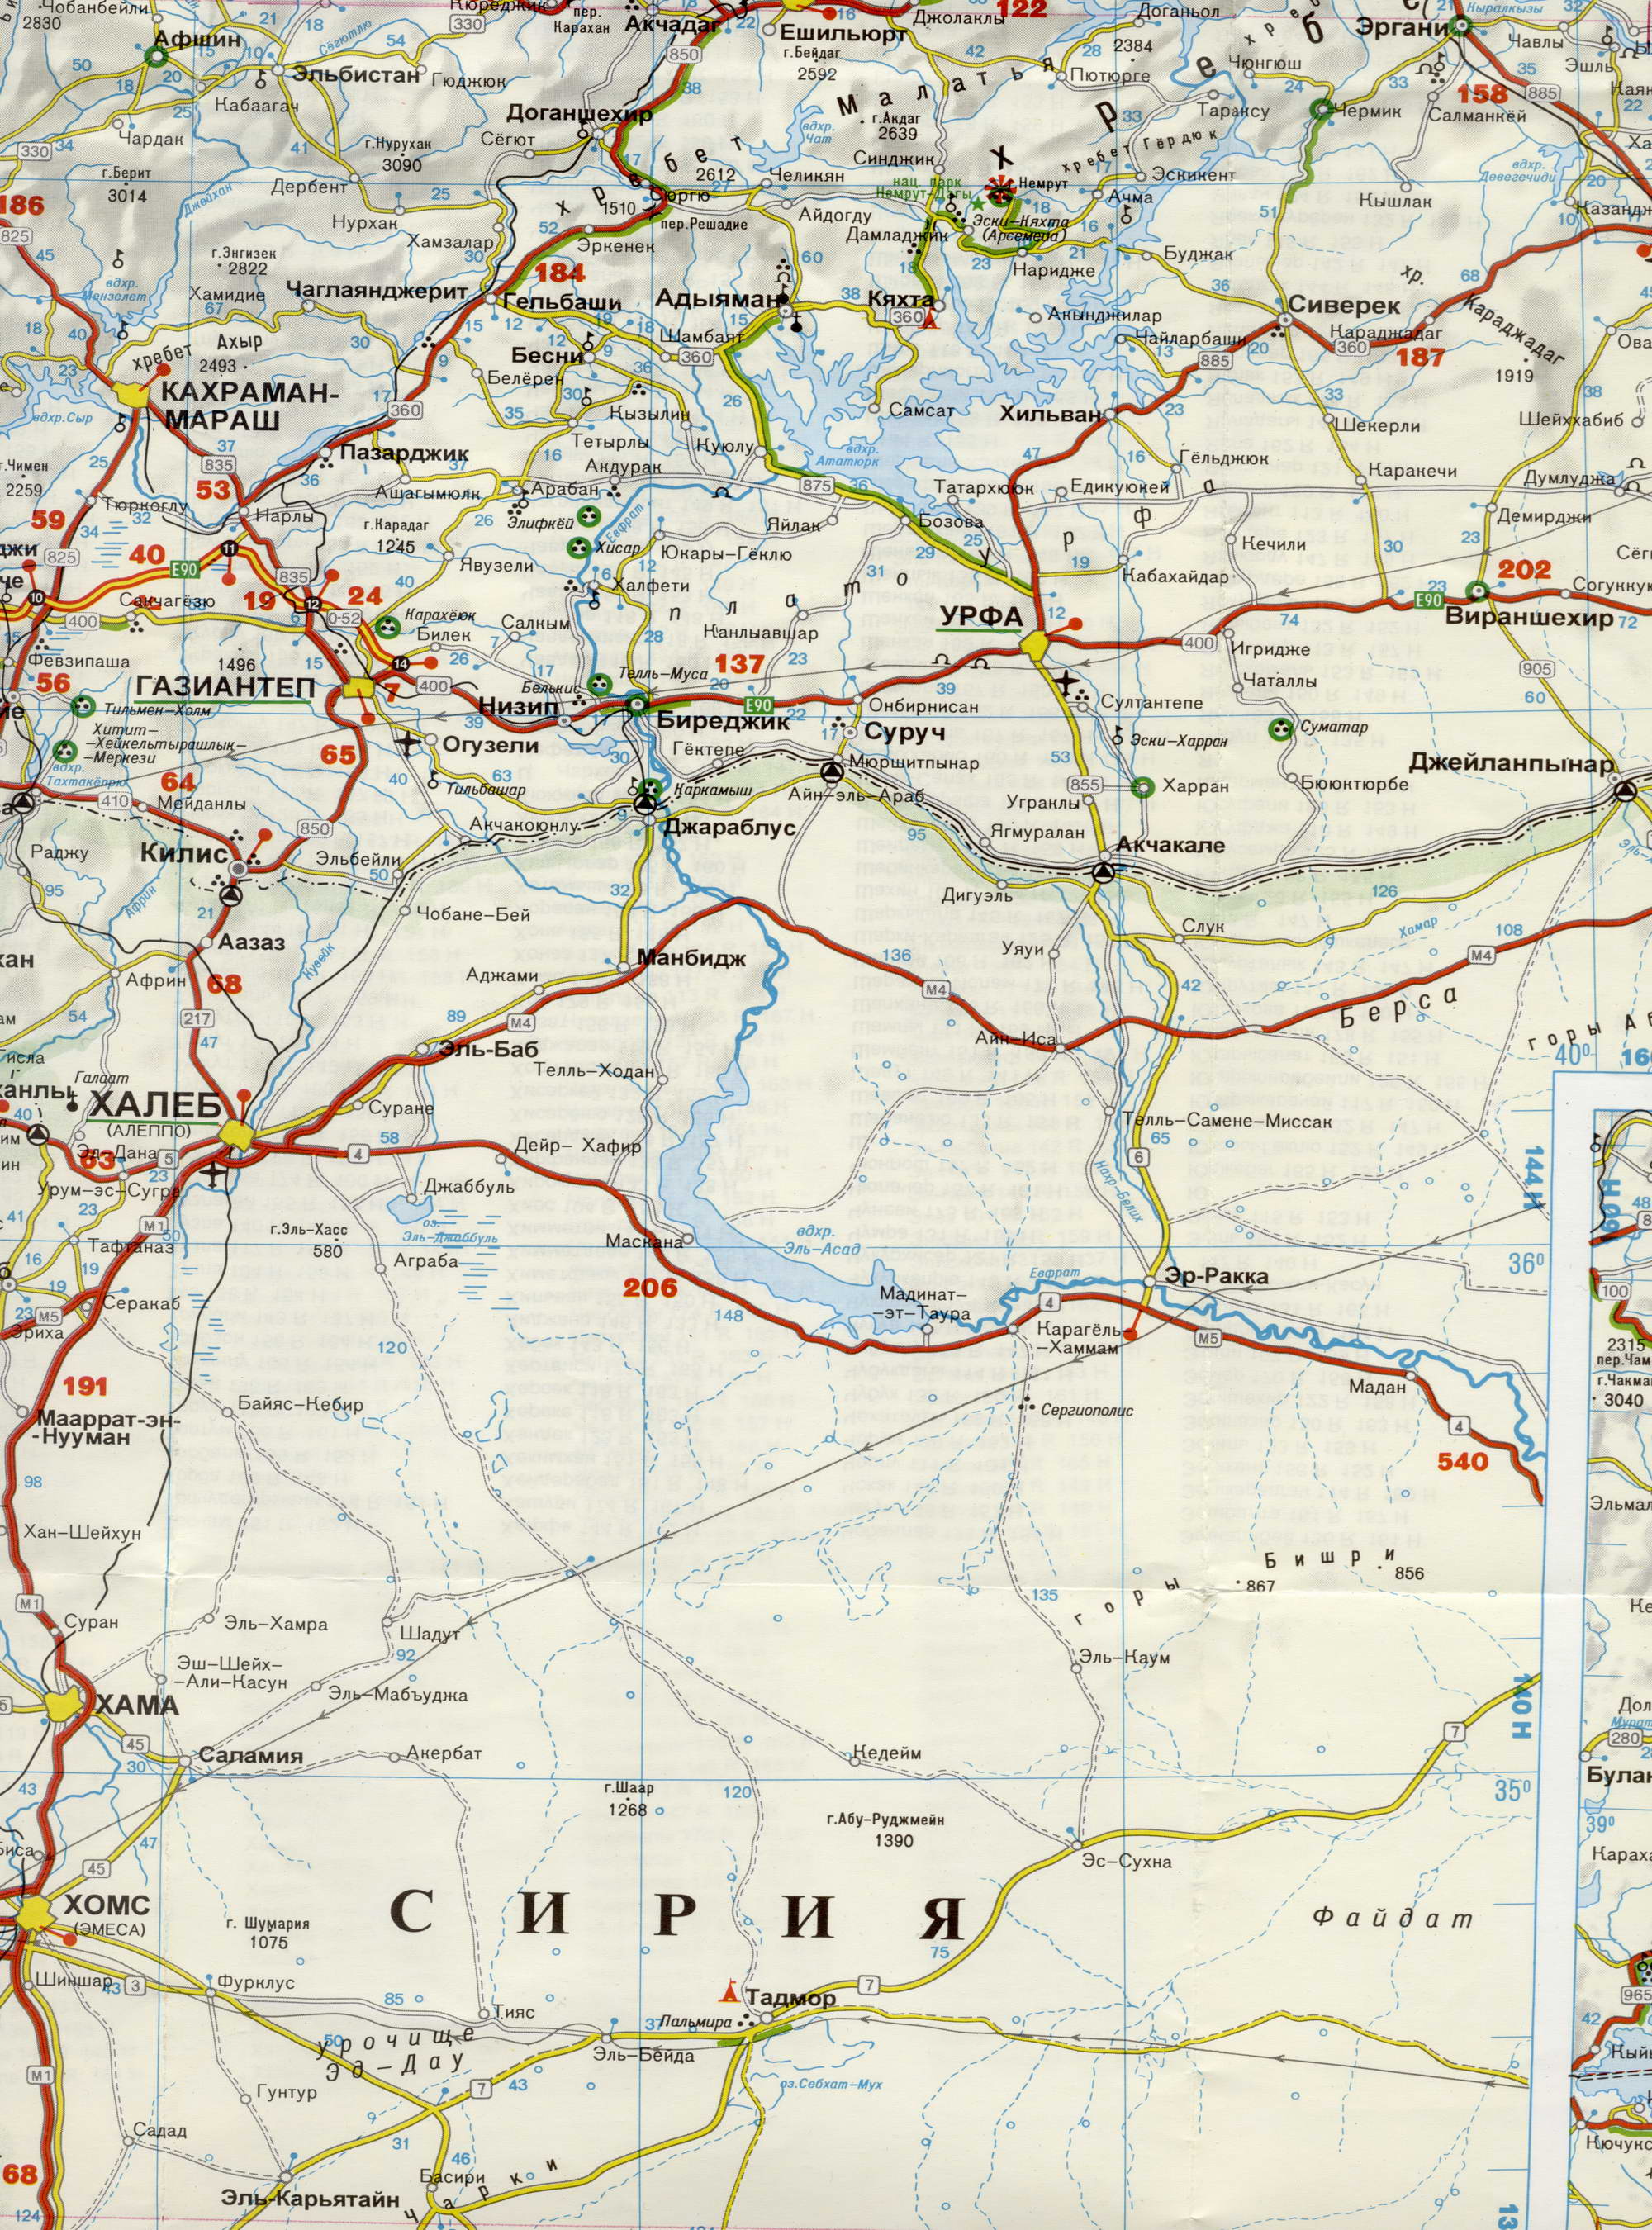 Автомобильная карта Турции на русском языке. Большая подробная карта Турции на русском языке. Автомобильная карта Турции, D1 - 